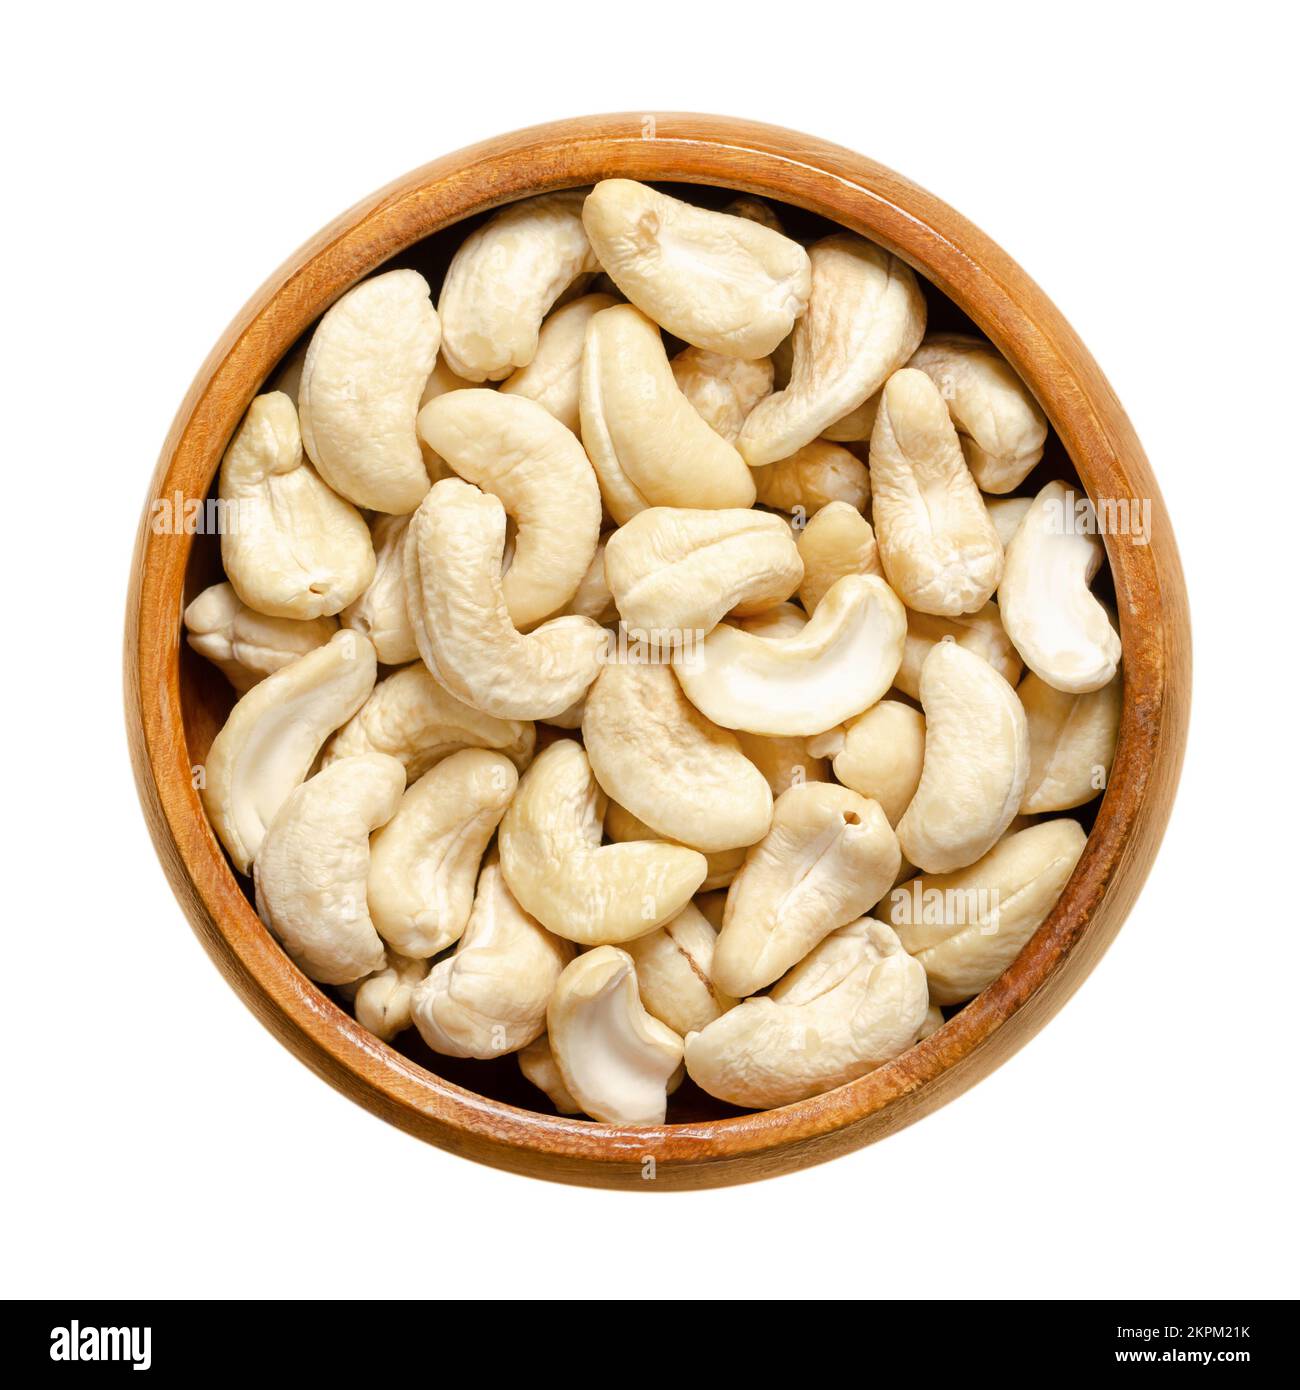 Kaschu-Nüsse, rohe Kaschu-Nüsse in einer Holzschüssel. Samen von geschälten Cashew-Früchten, Anacardium occidentale. Snacknüsse. Stockfoto